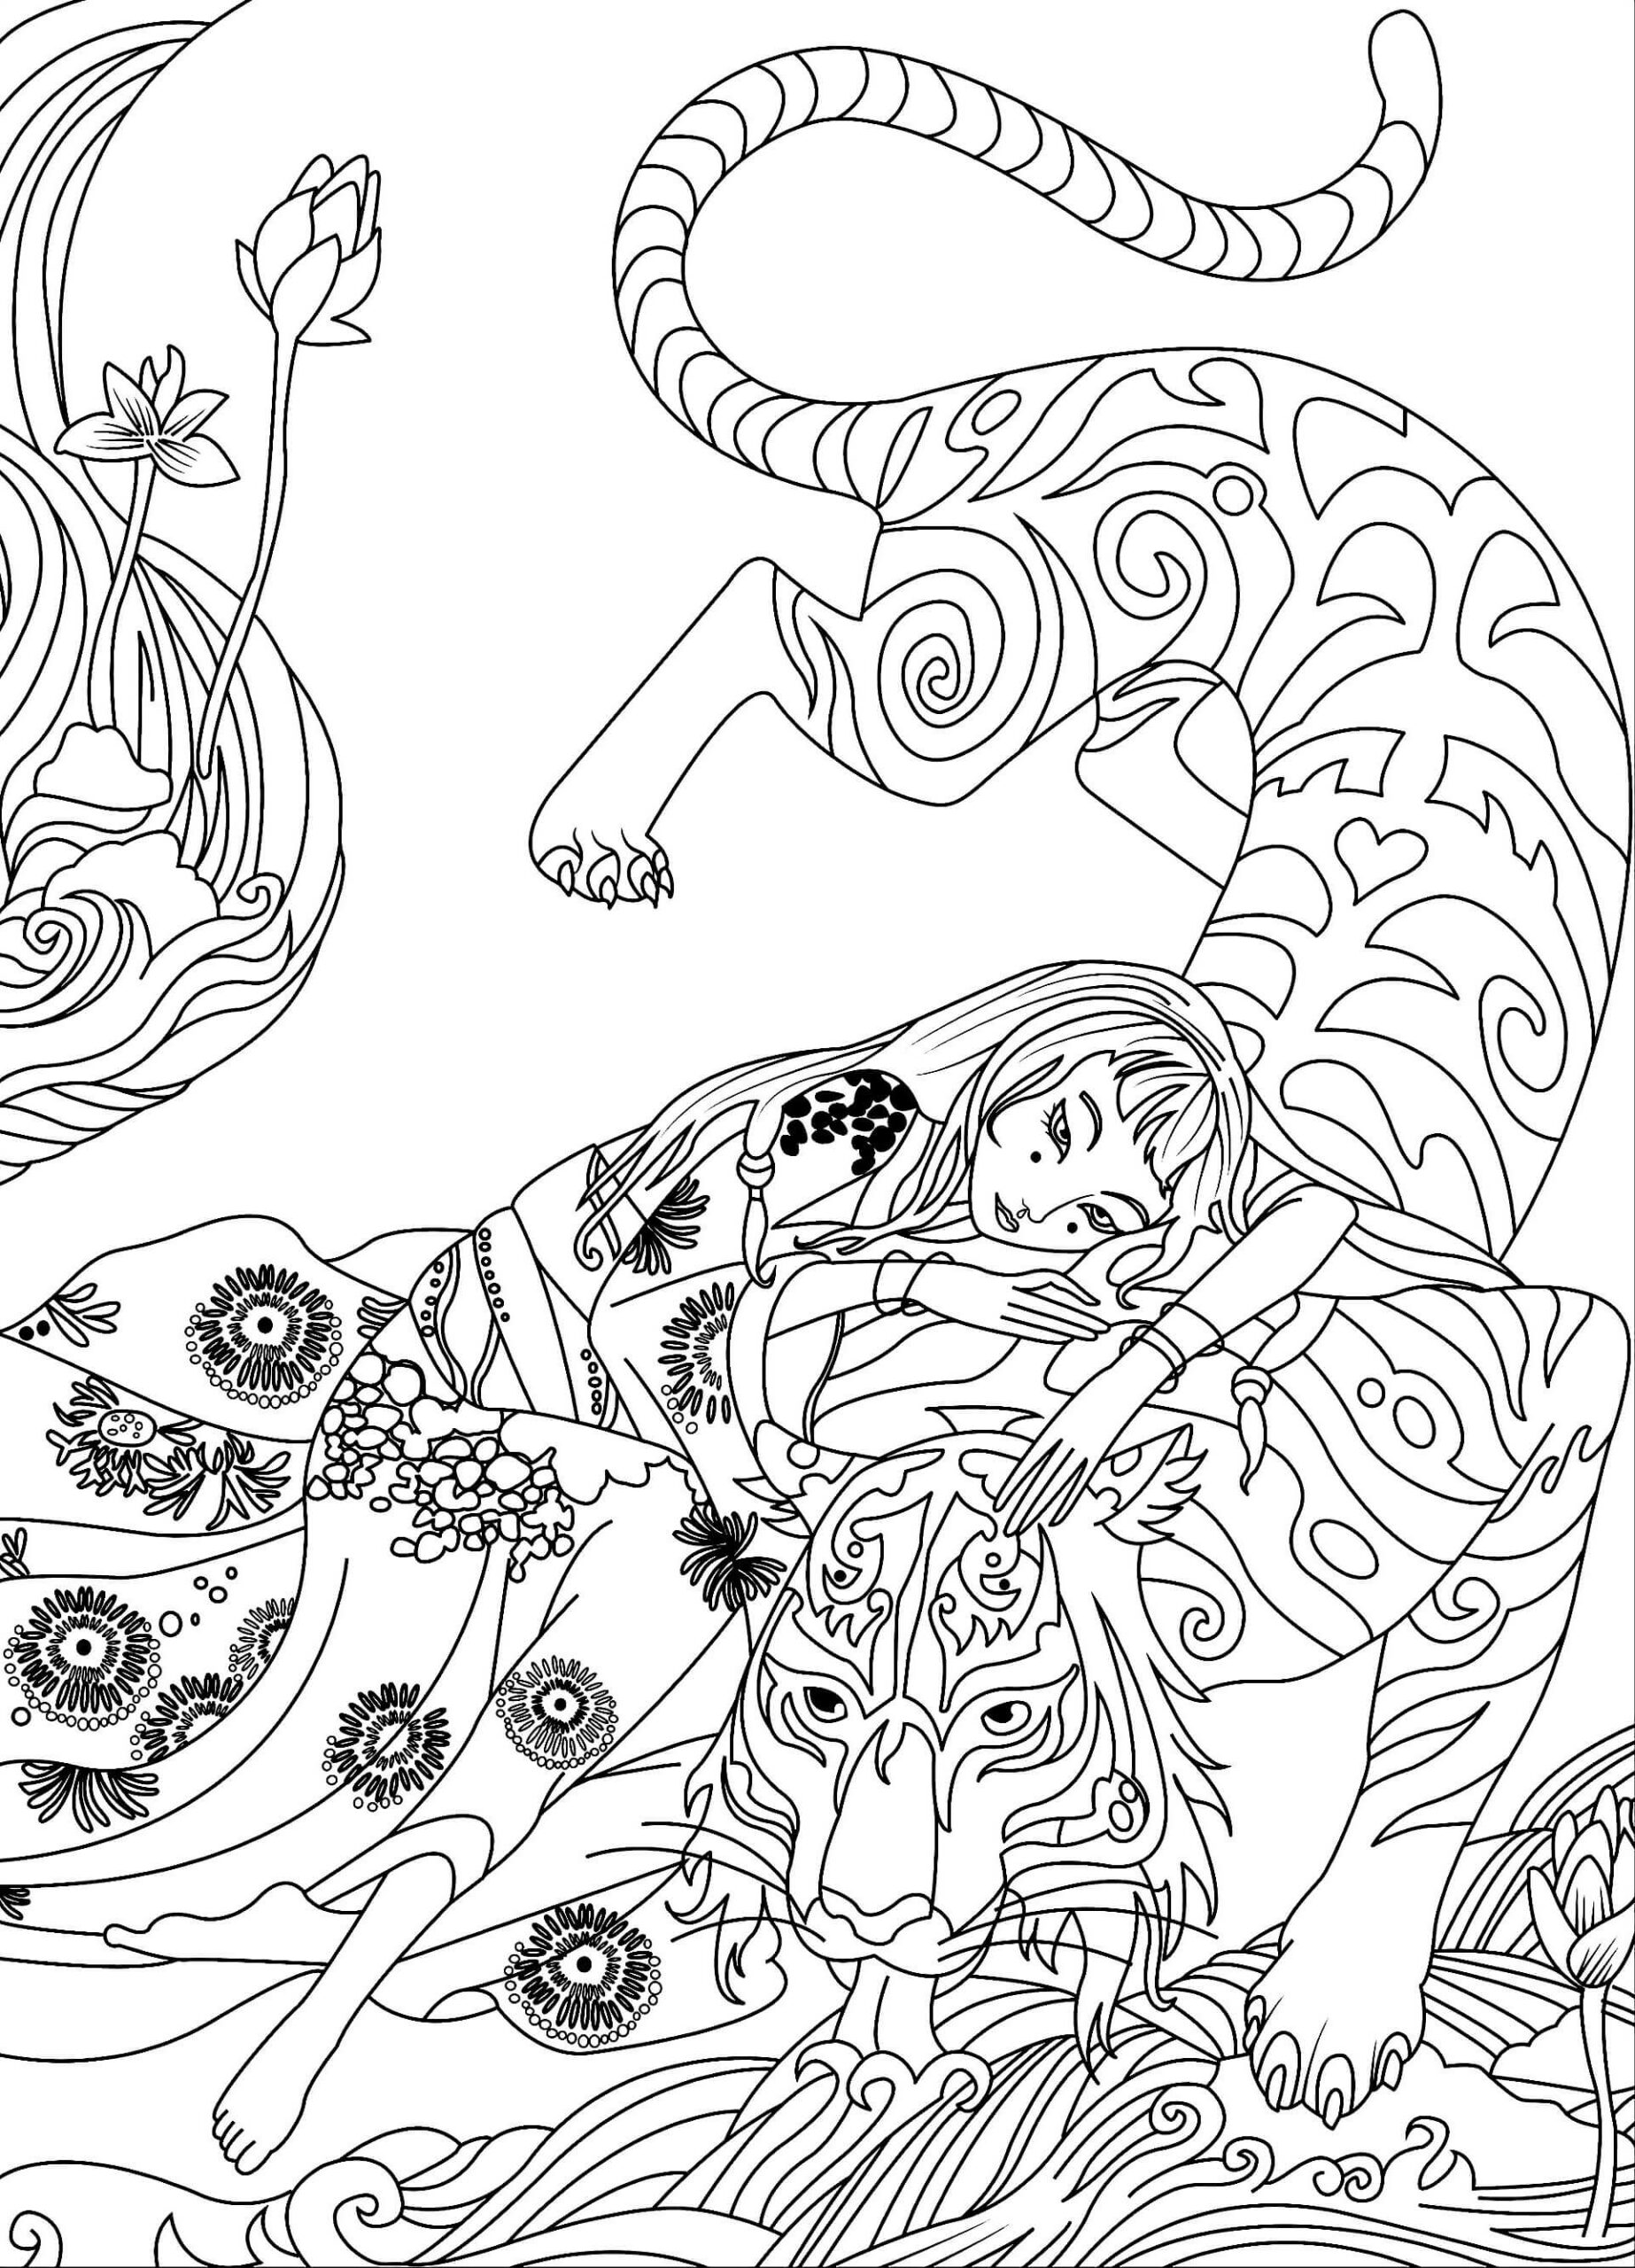 Mandala Tiger And Girl Coloring Page Mandalas